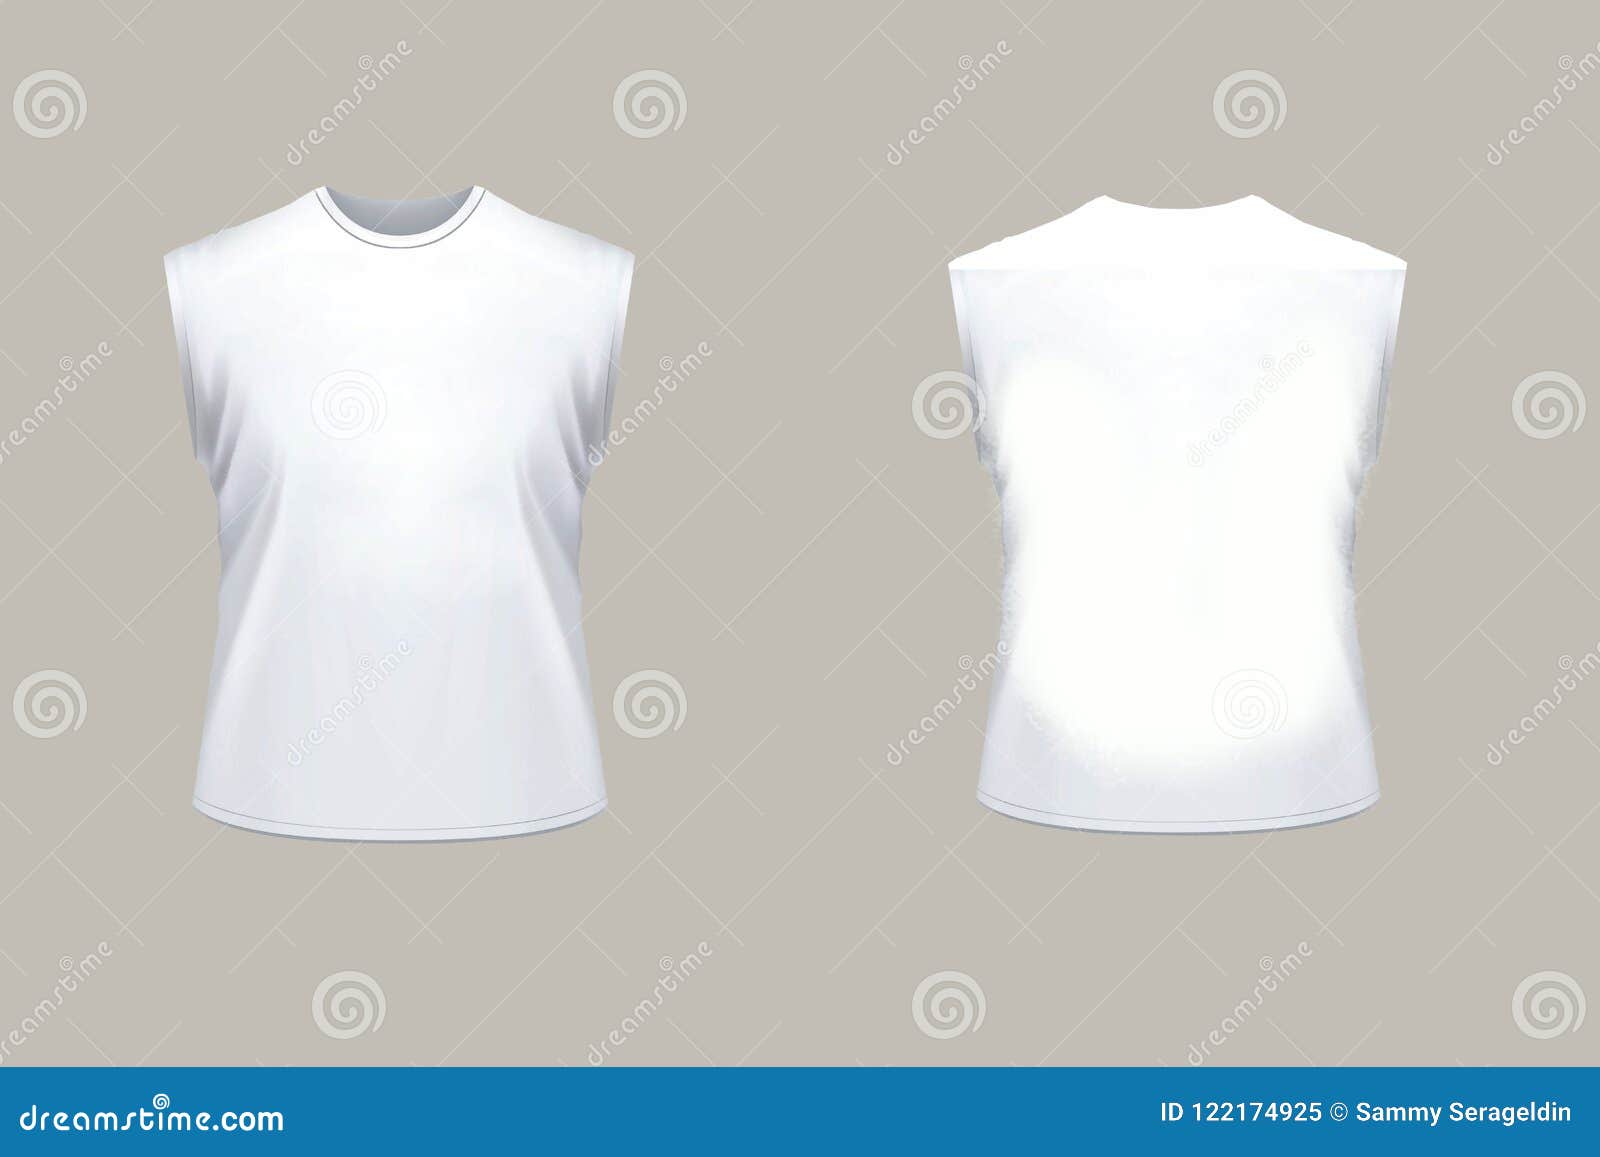 Download Sleeveless Unisex Shirt Isolated On White Stock ...